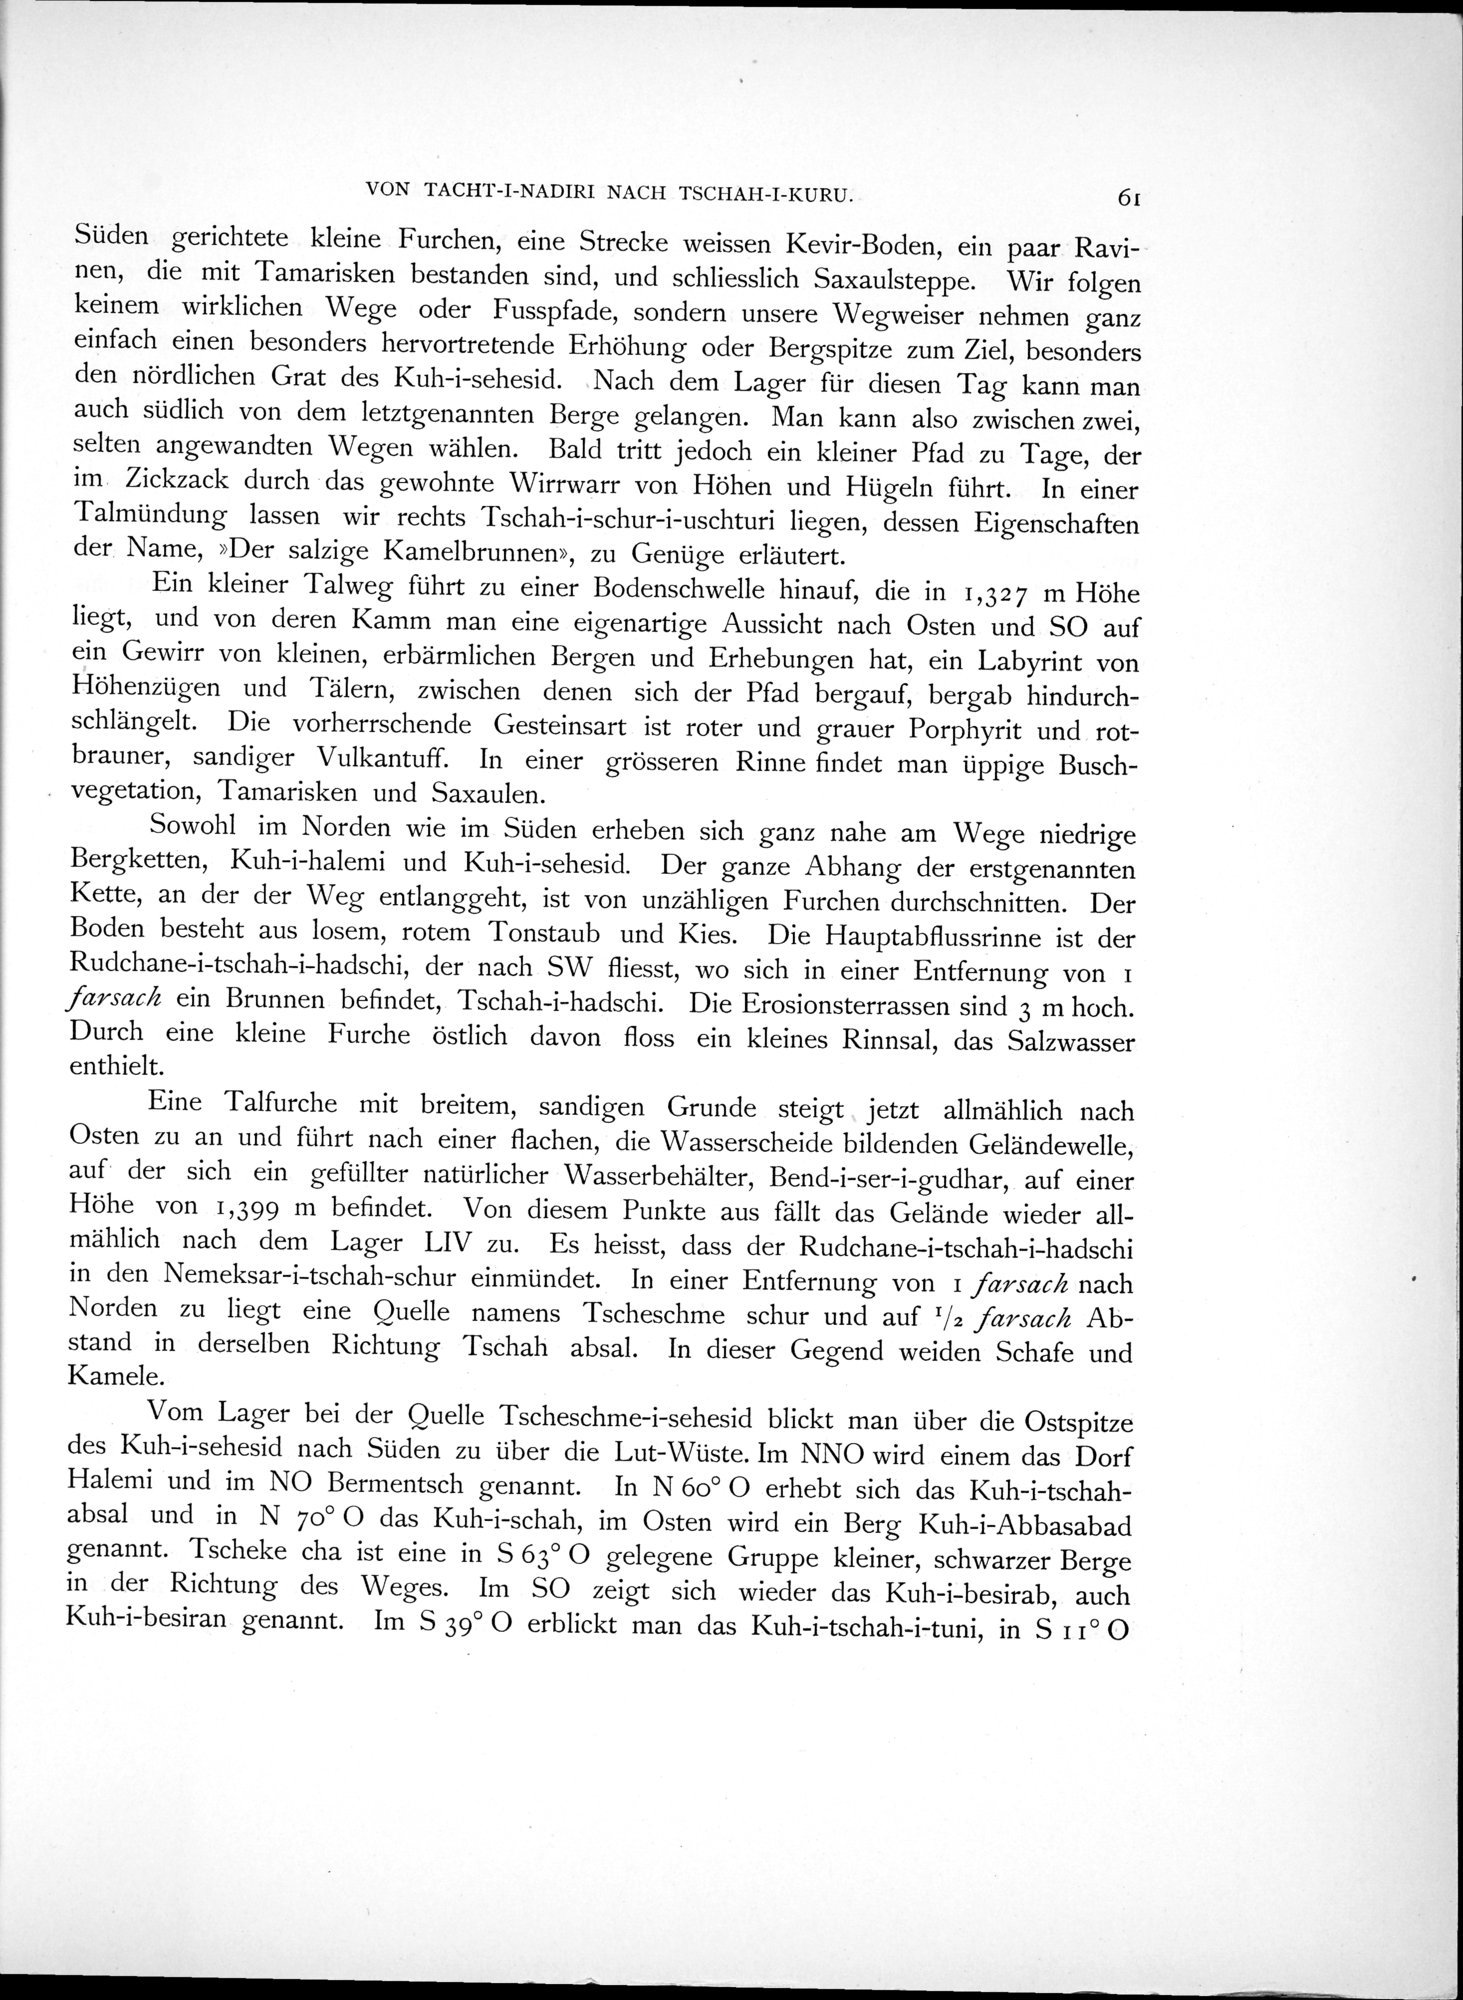 Eine Routenaufnahme durch Ostpersien : vol.1 / Page 201 (Grayscale High Resolution Image)